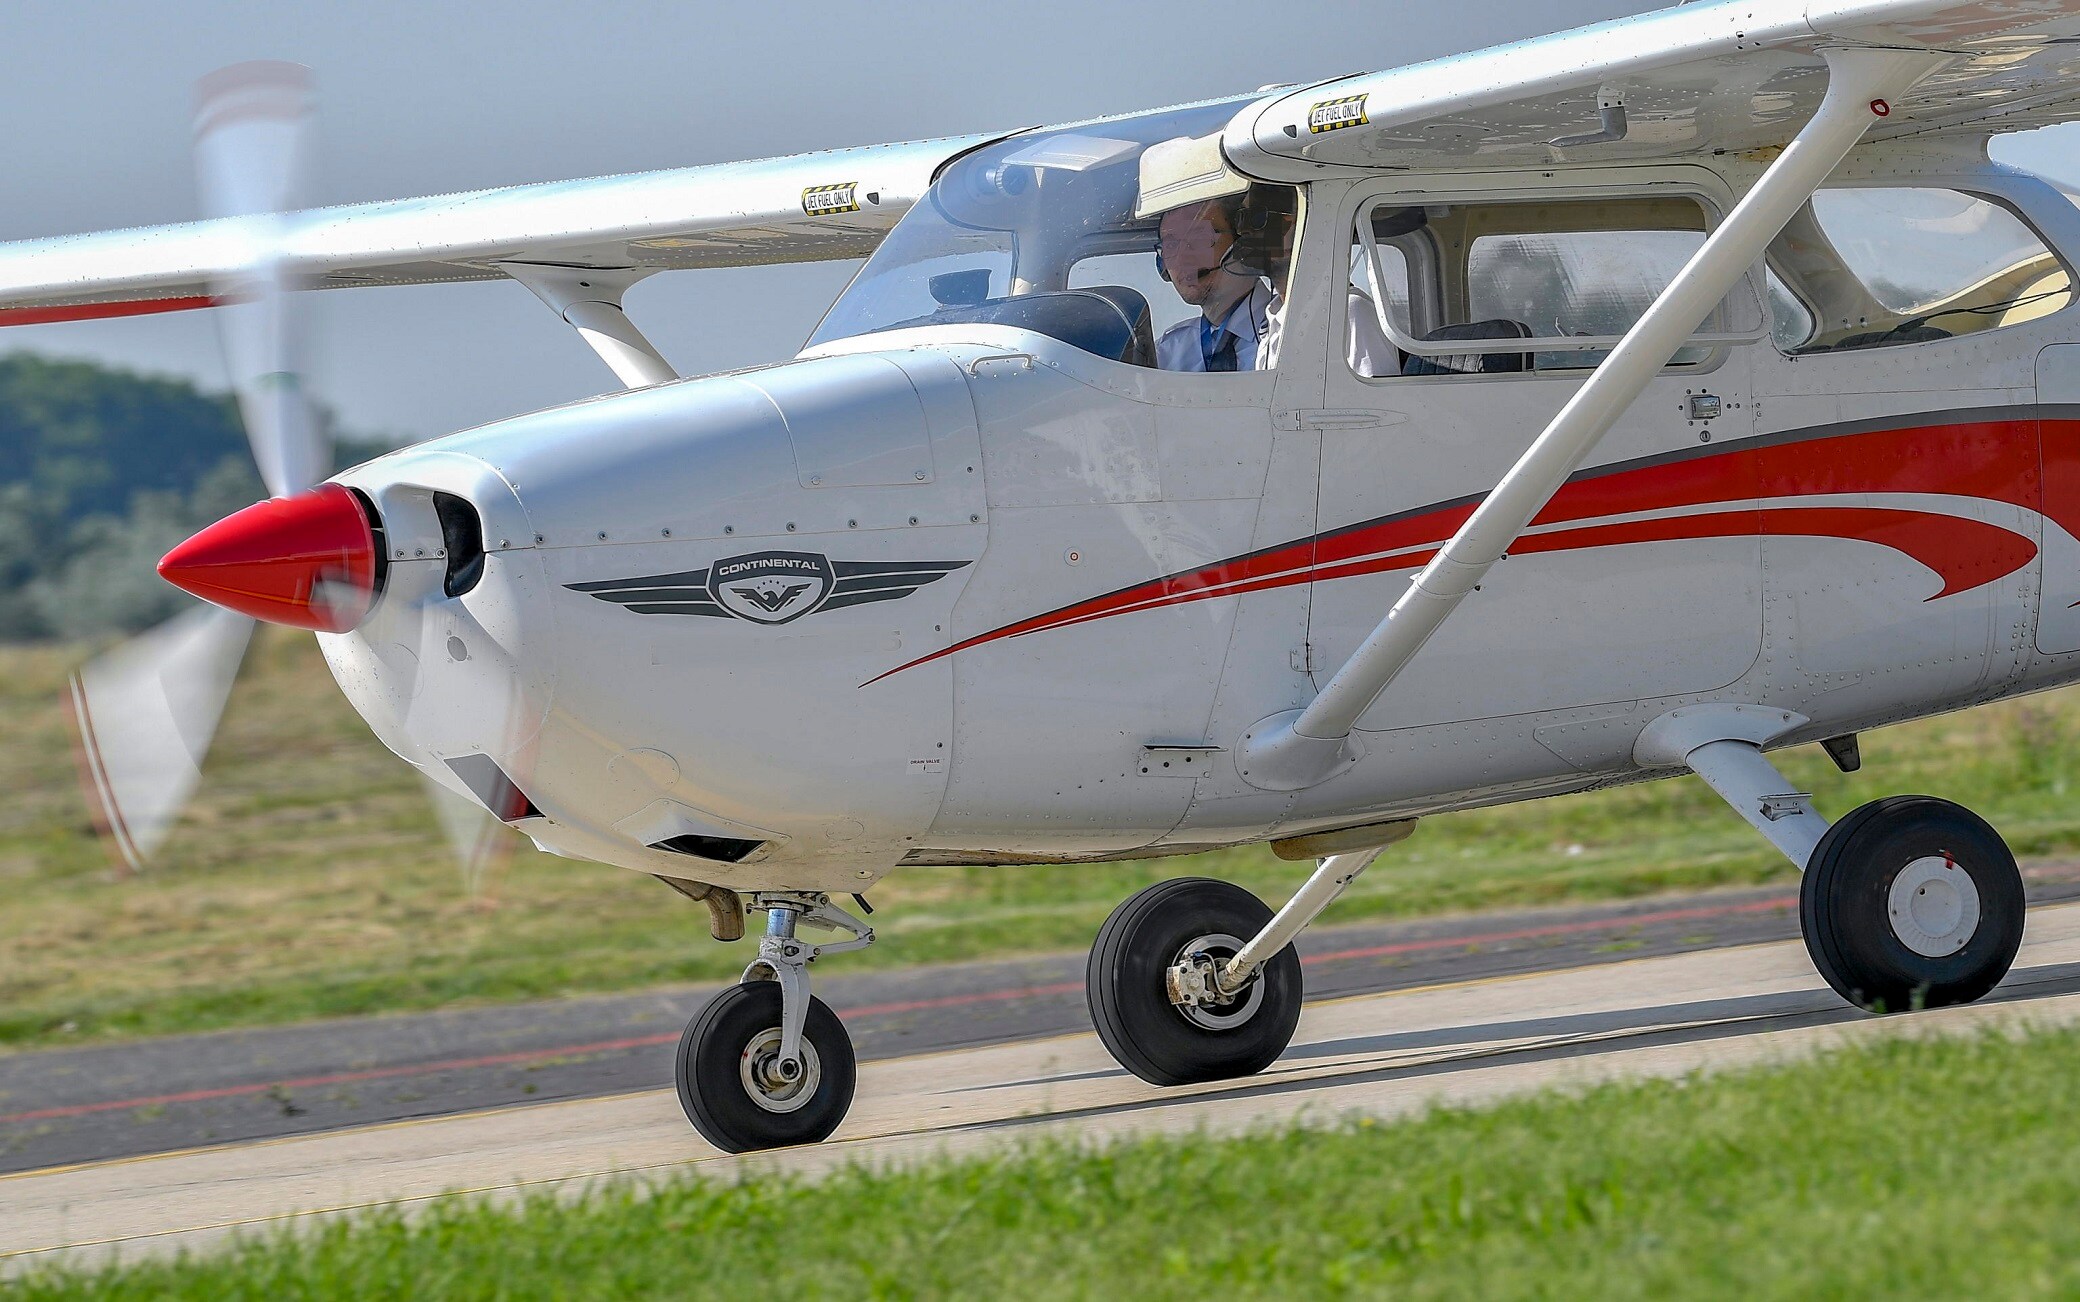 Novi Ligure : vole un avion Cessna dans le hangar, s’arrête dans le ciel français